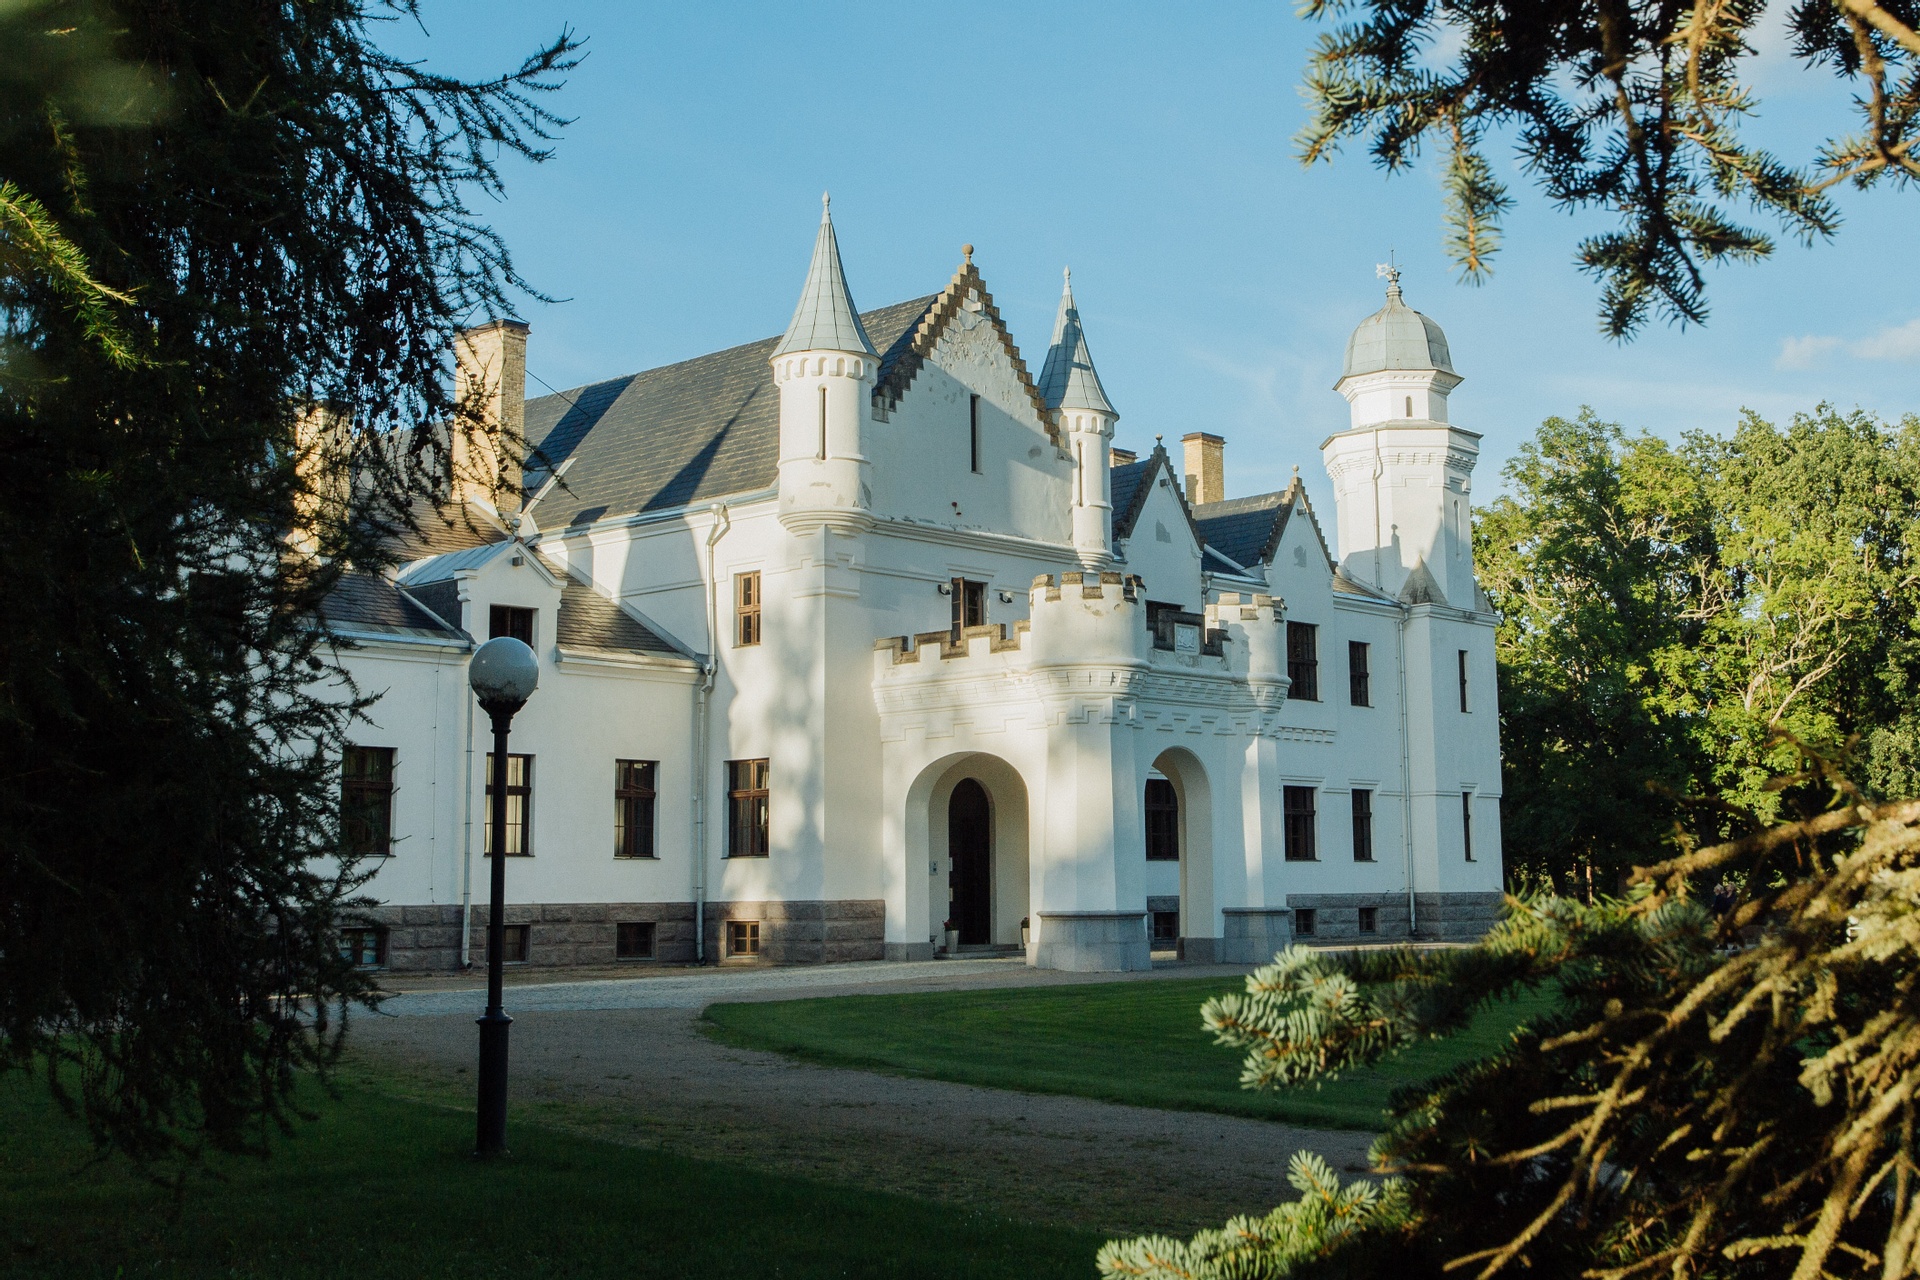 The most impressive castles in Estonia